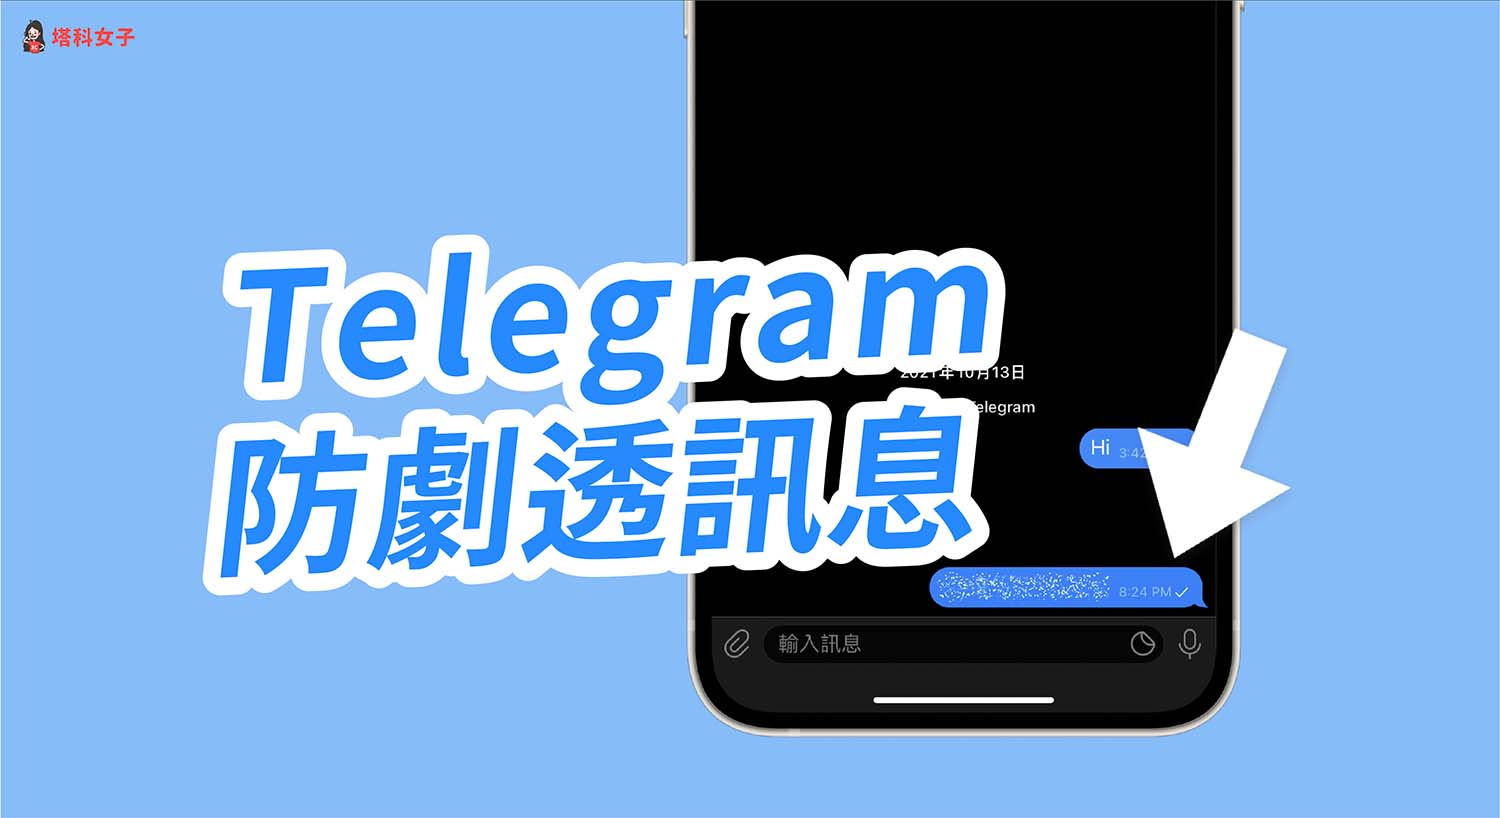 Telegram 如何傳送隱藏文字內容的訊息？教你使用「防劇透訊息」